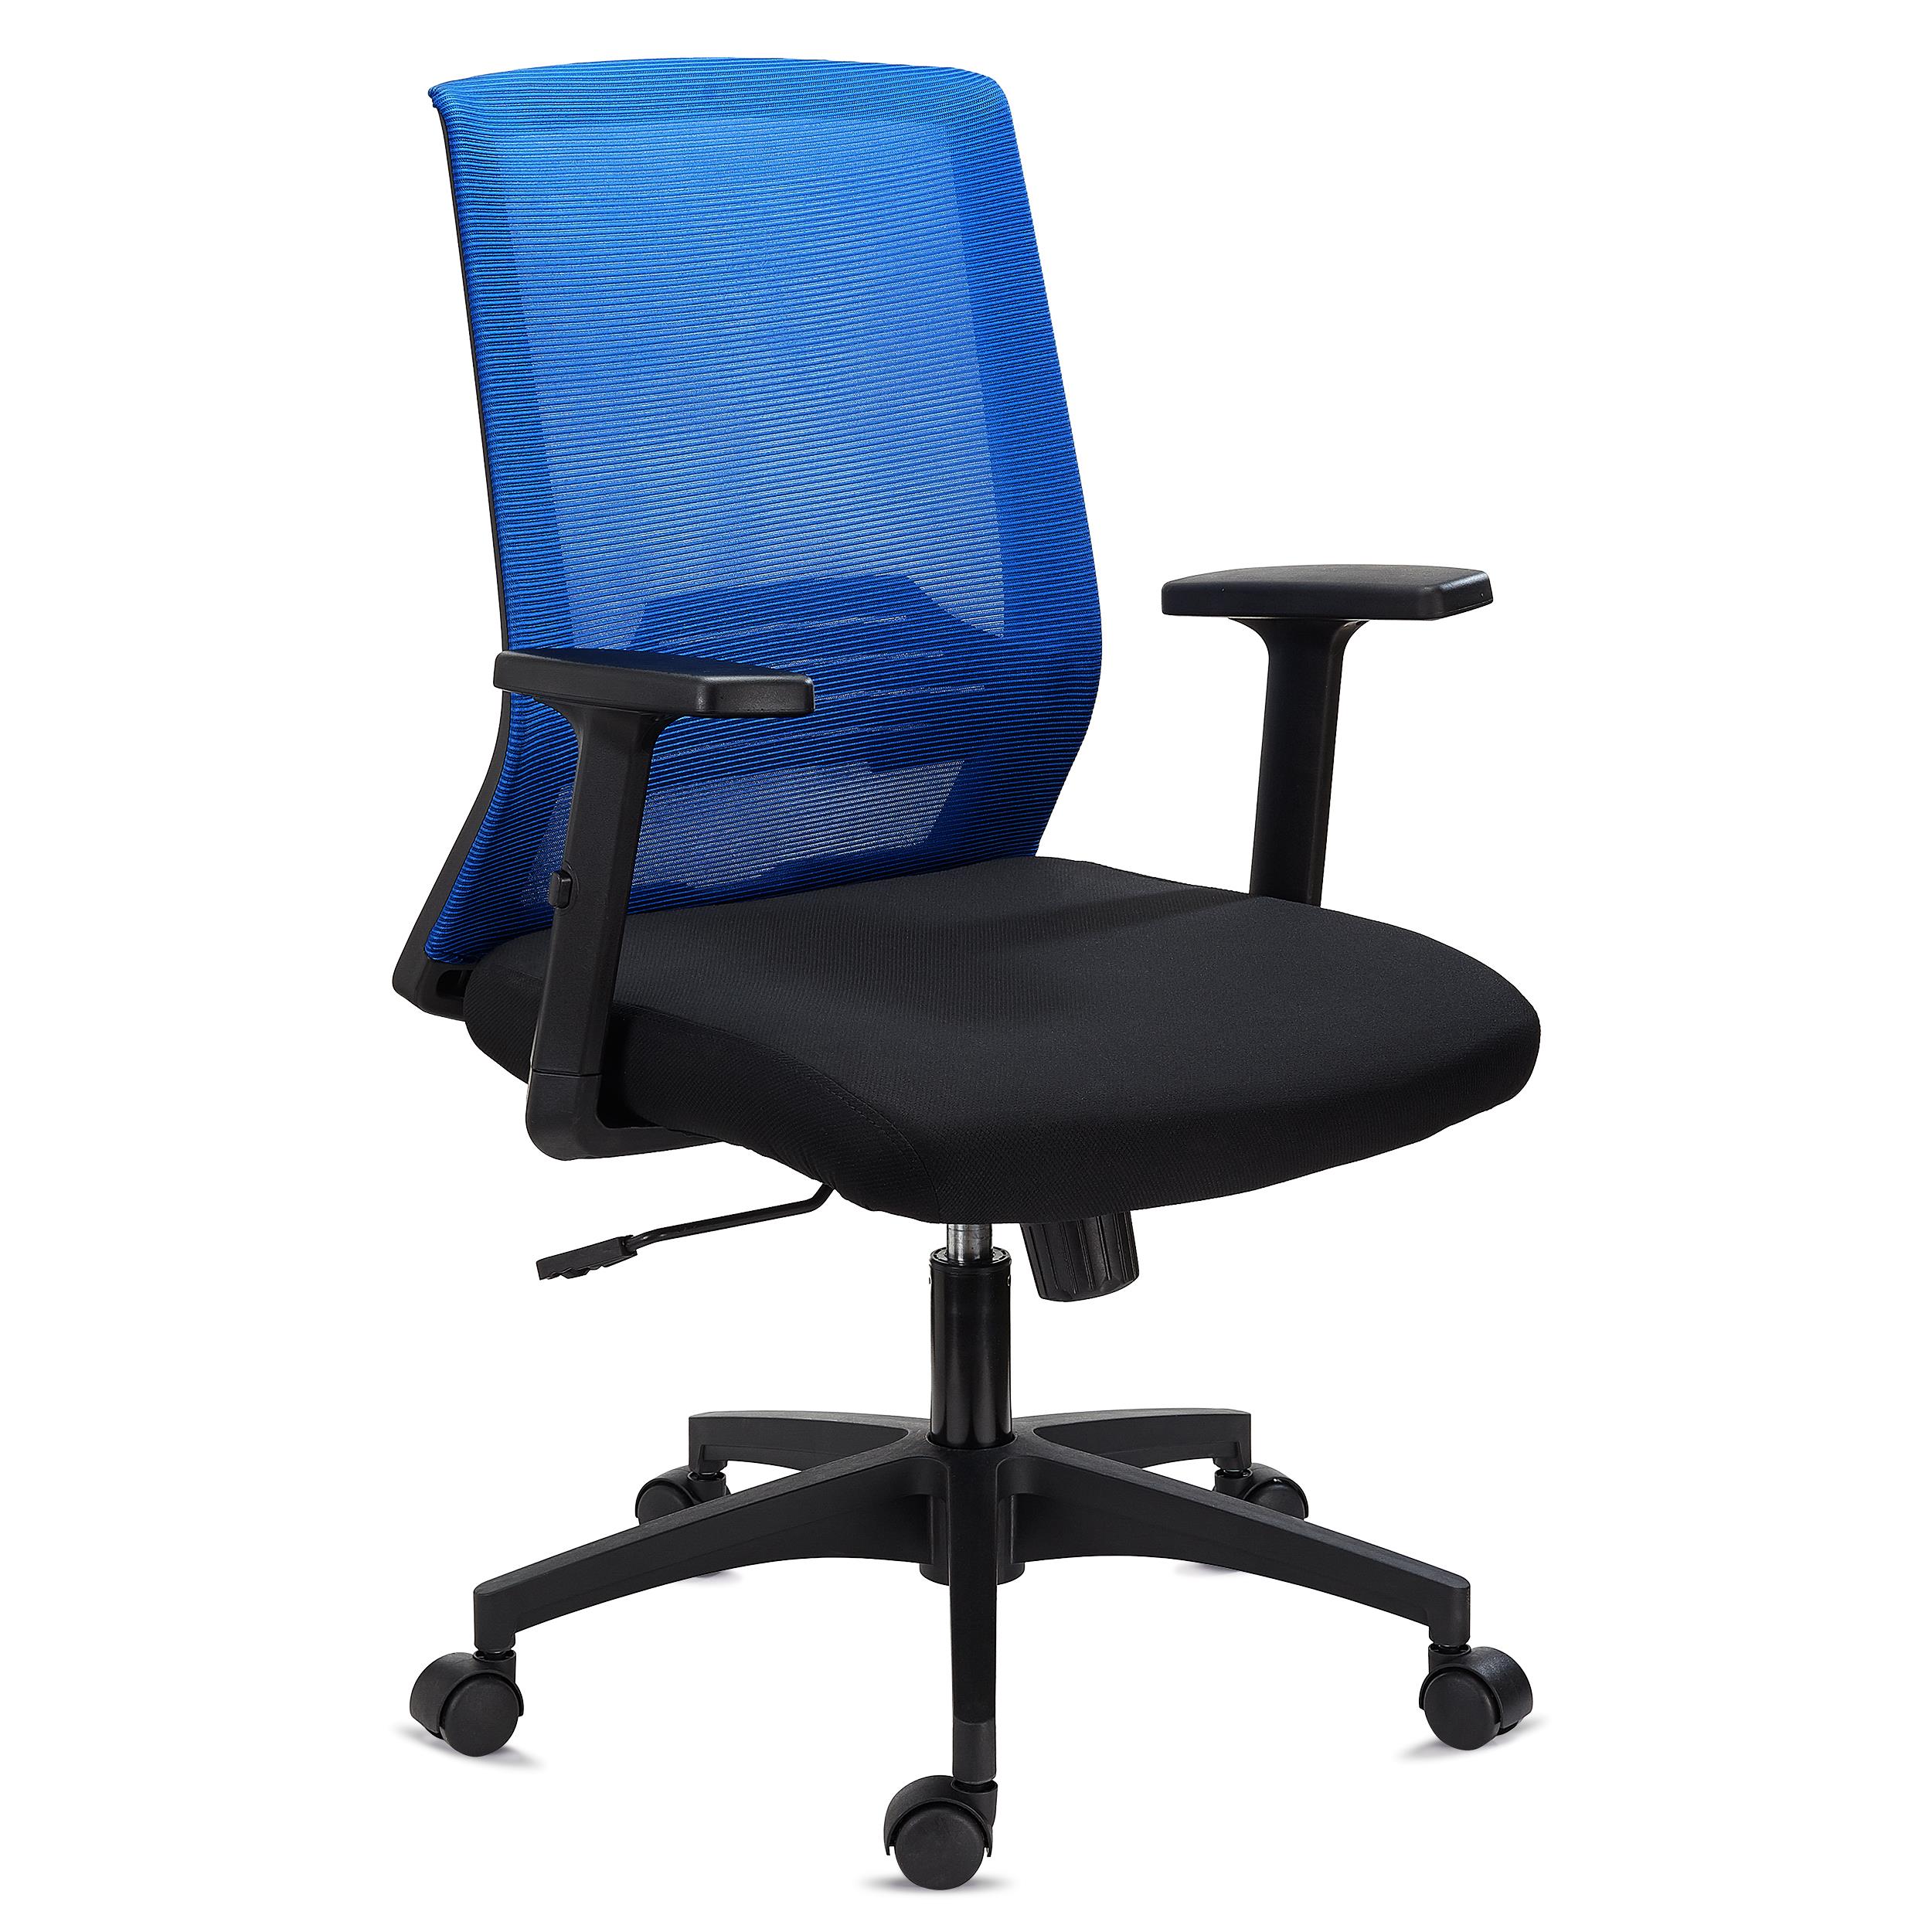 Cadeira de Escritório MIAMI, Suporte Lombar, Braços Ajustáveis, Cómoda e Ampla em Cor Azul